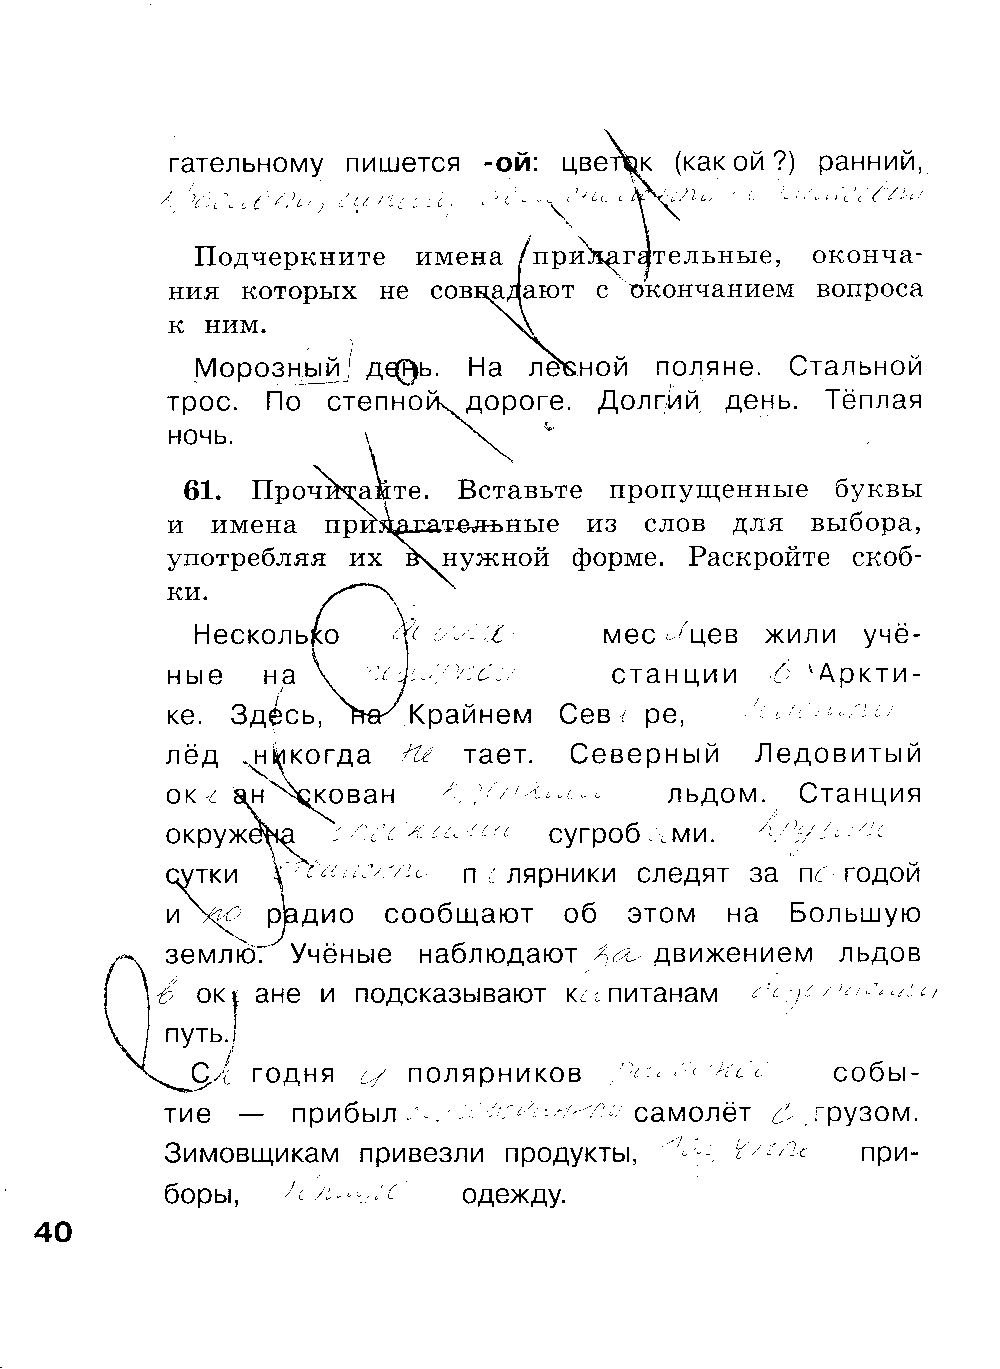 ГДЗ Русский язык 4 класс - стр. 40